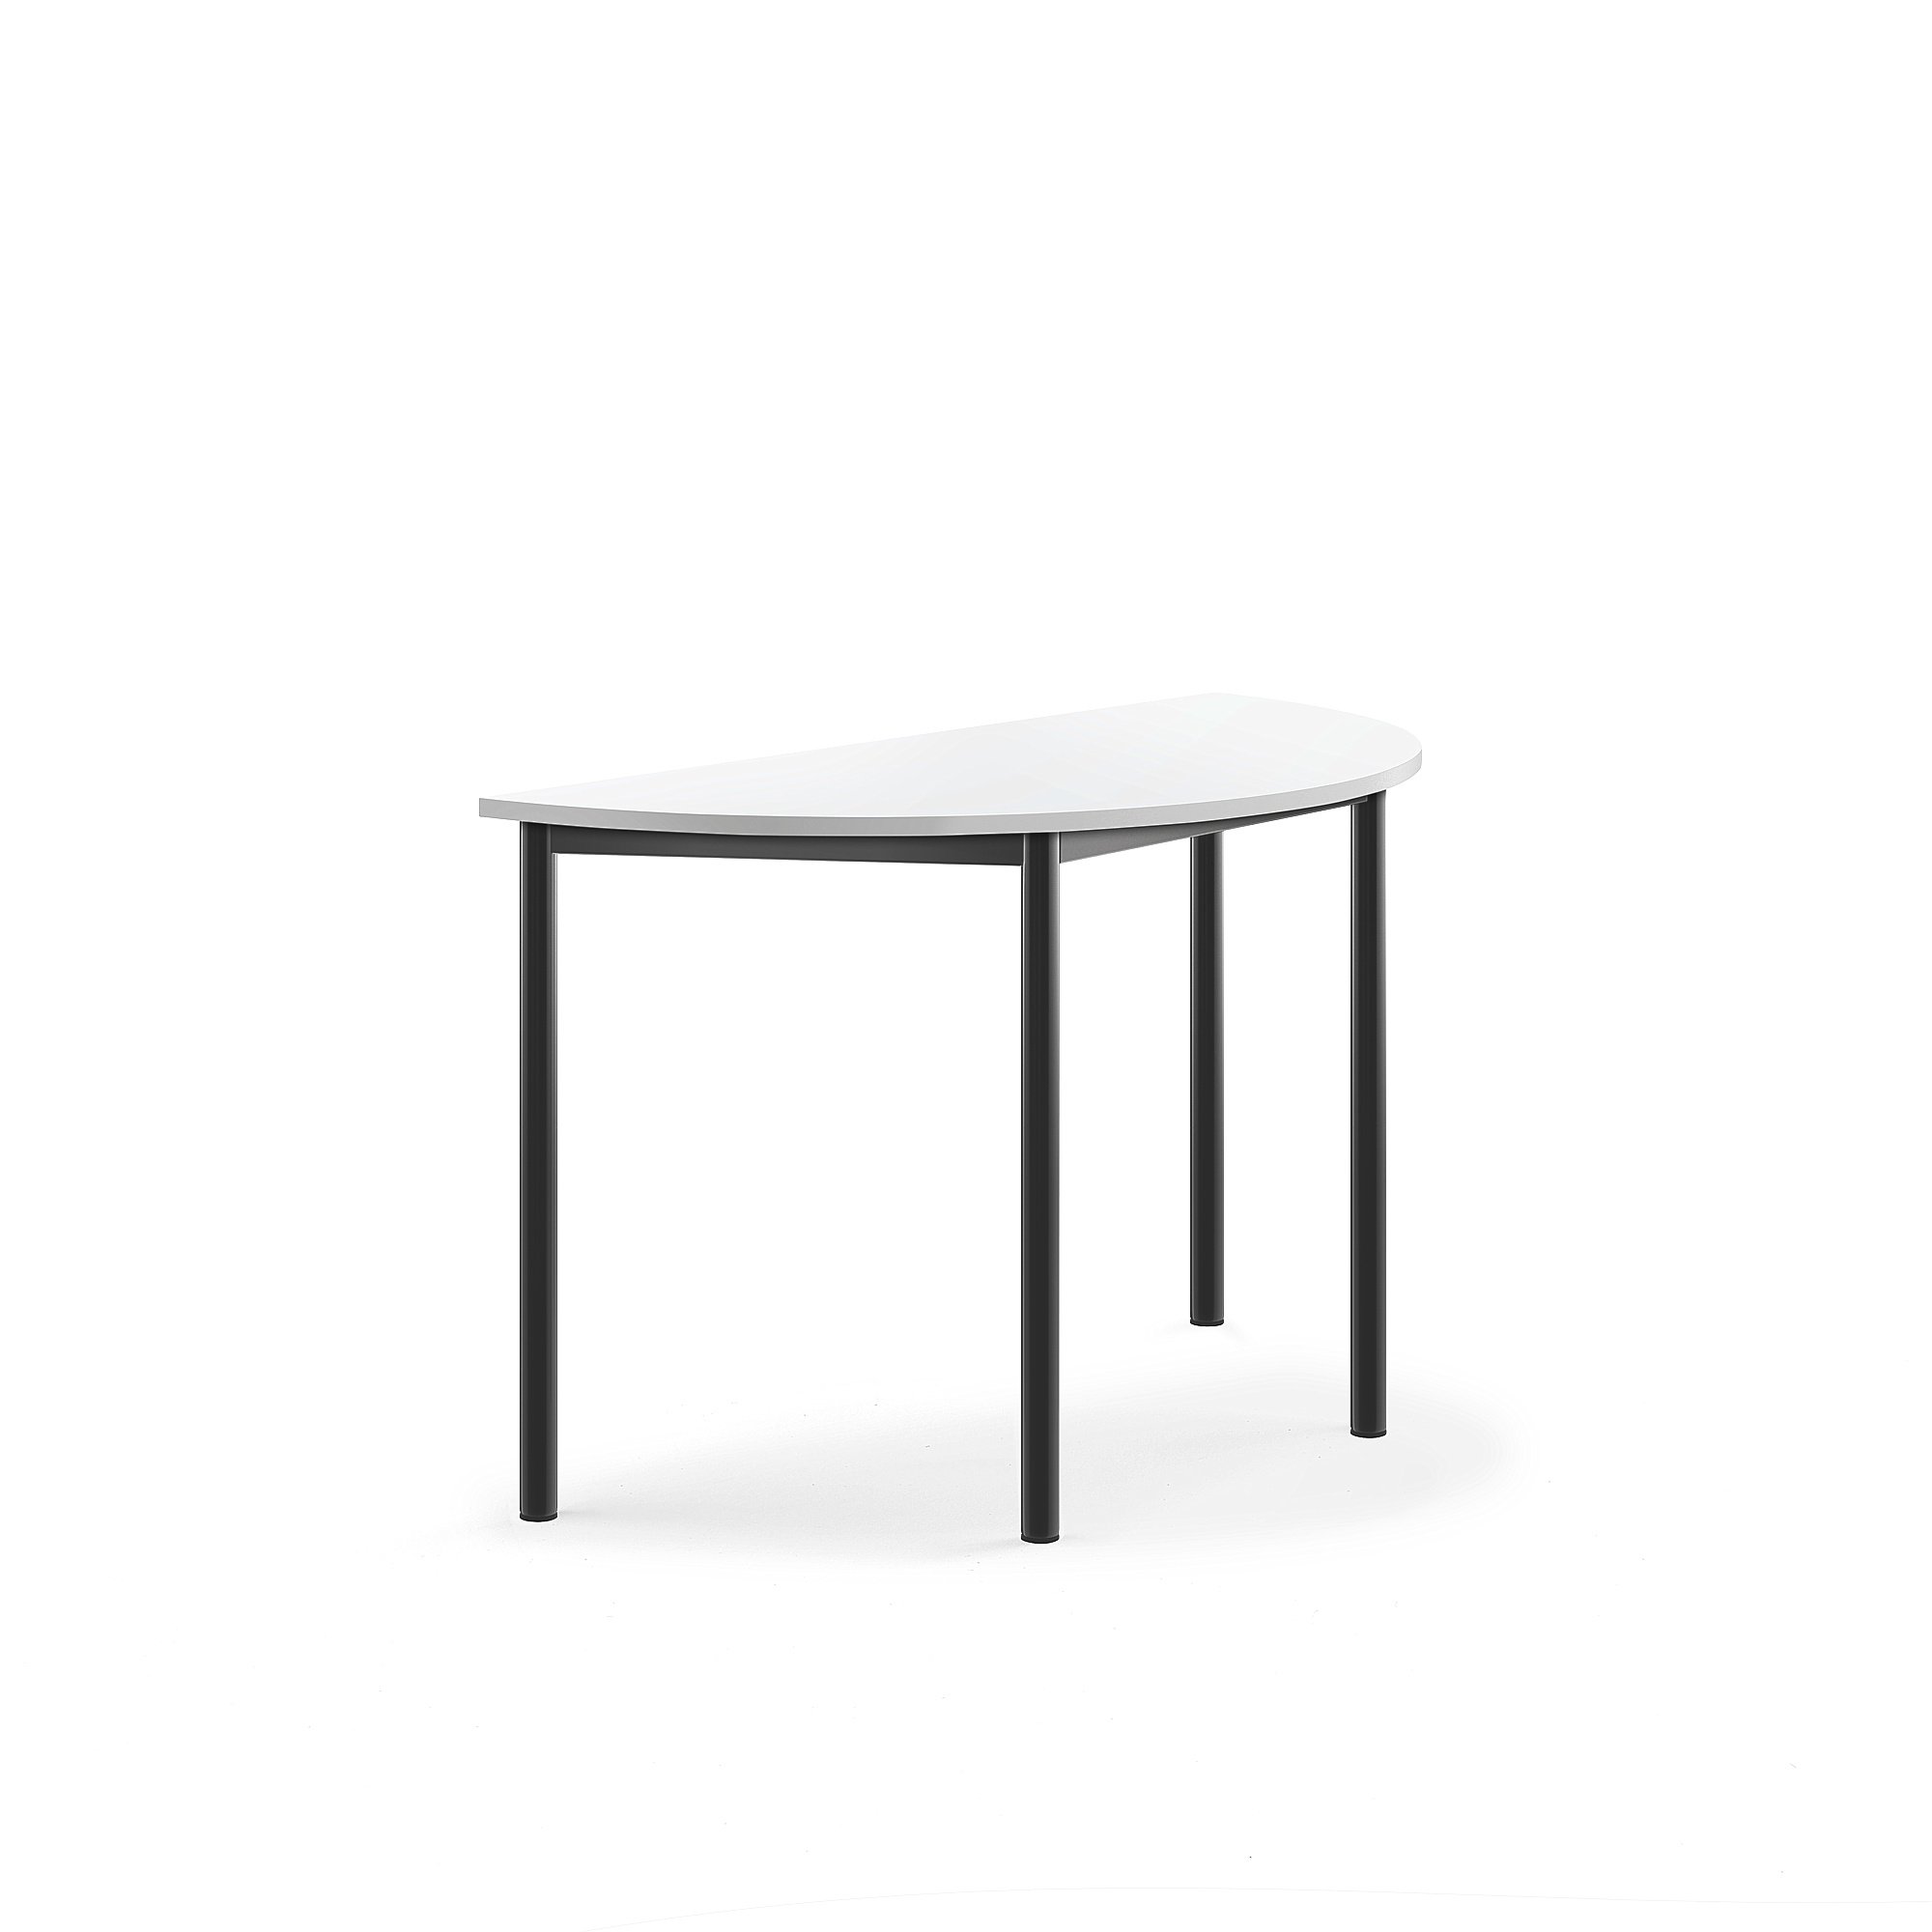 Stůl SONITUS, půlkruh, 1200x600x720 mm, antracitově šedé nohy, HPL deska tlumící hluk, bílá